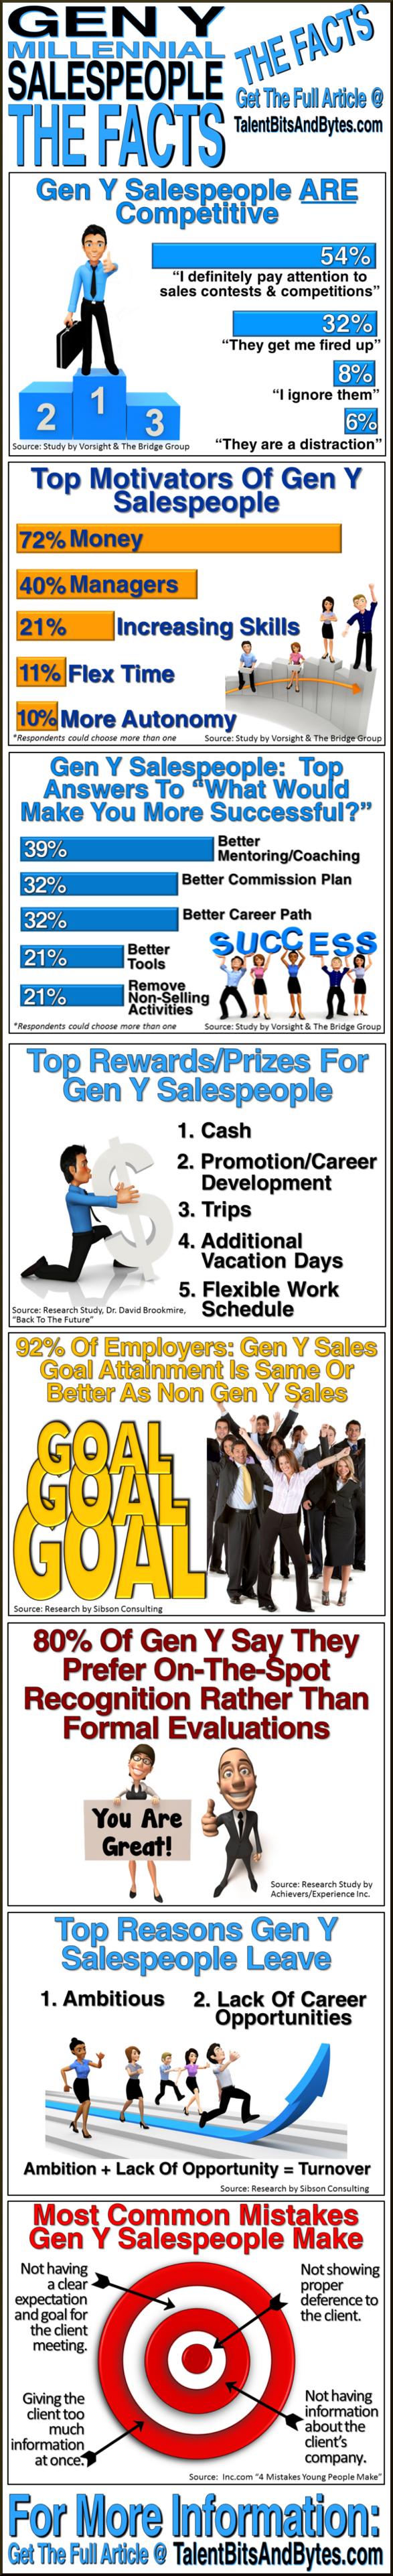 Gen Y Salespeople Infographic